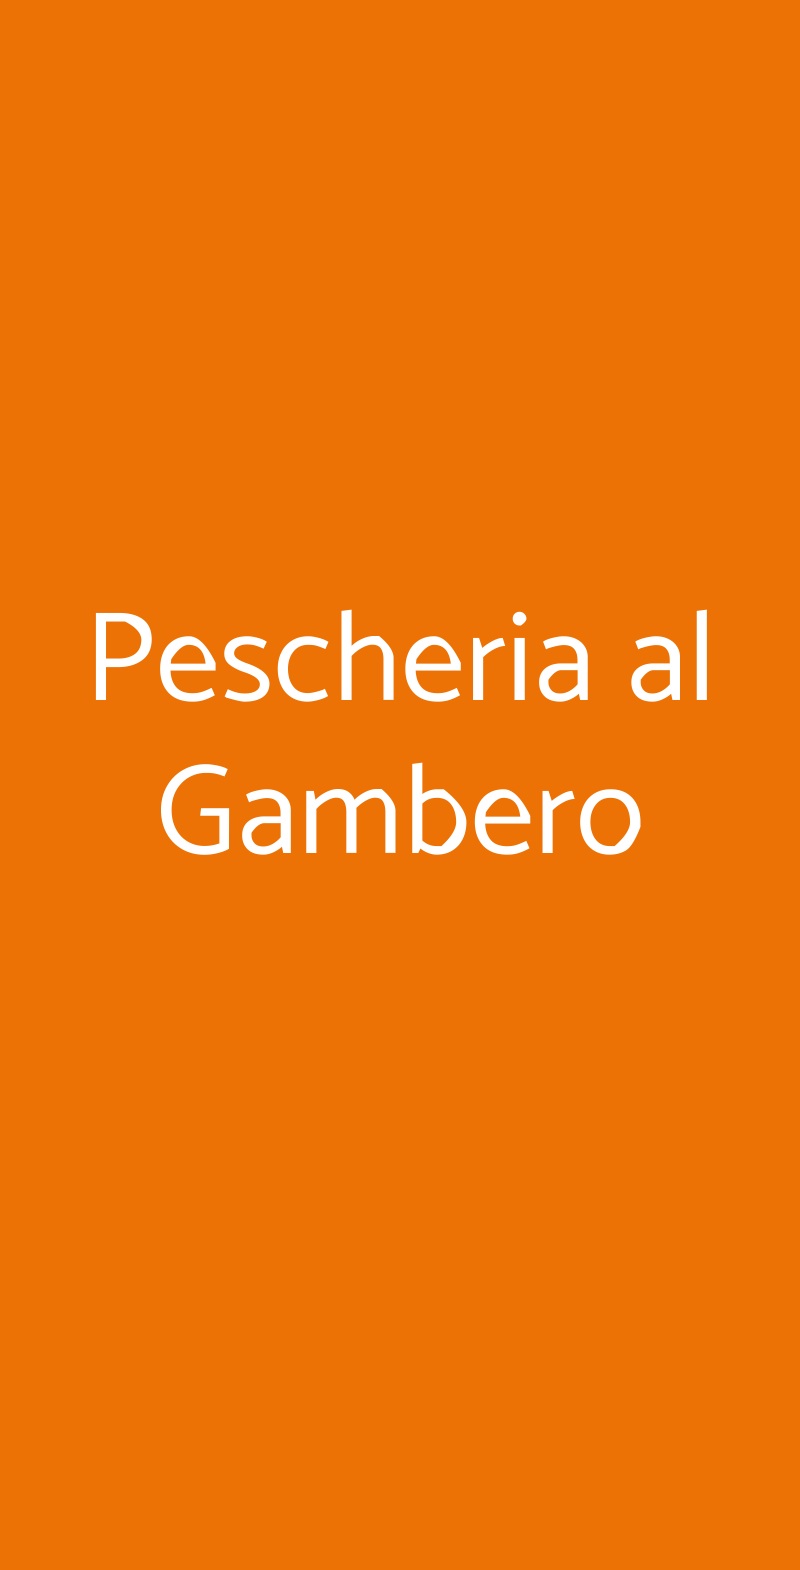 Pescheria al Gambero Trieste menù 1 pagina